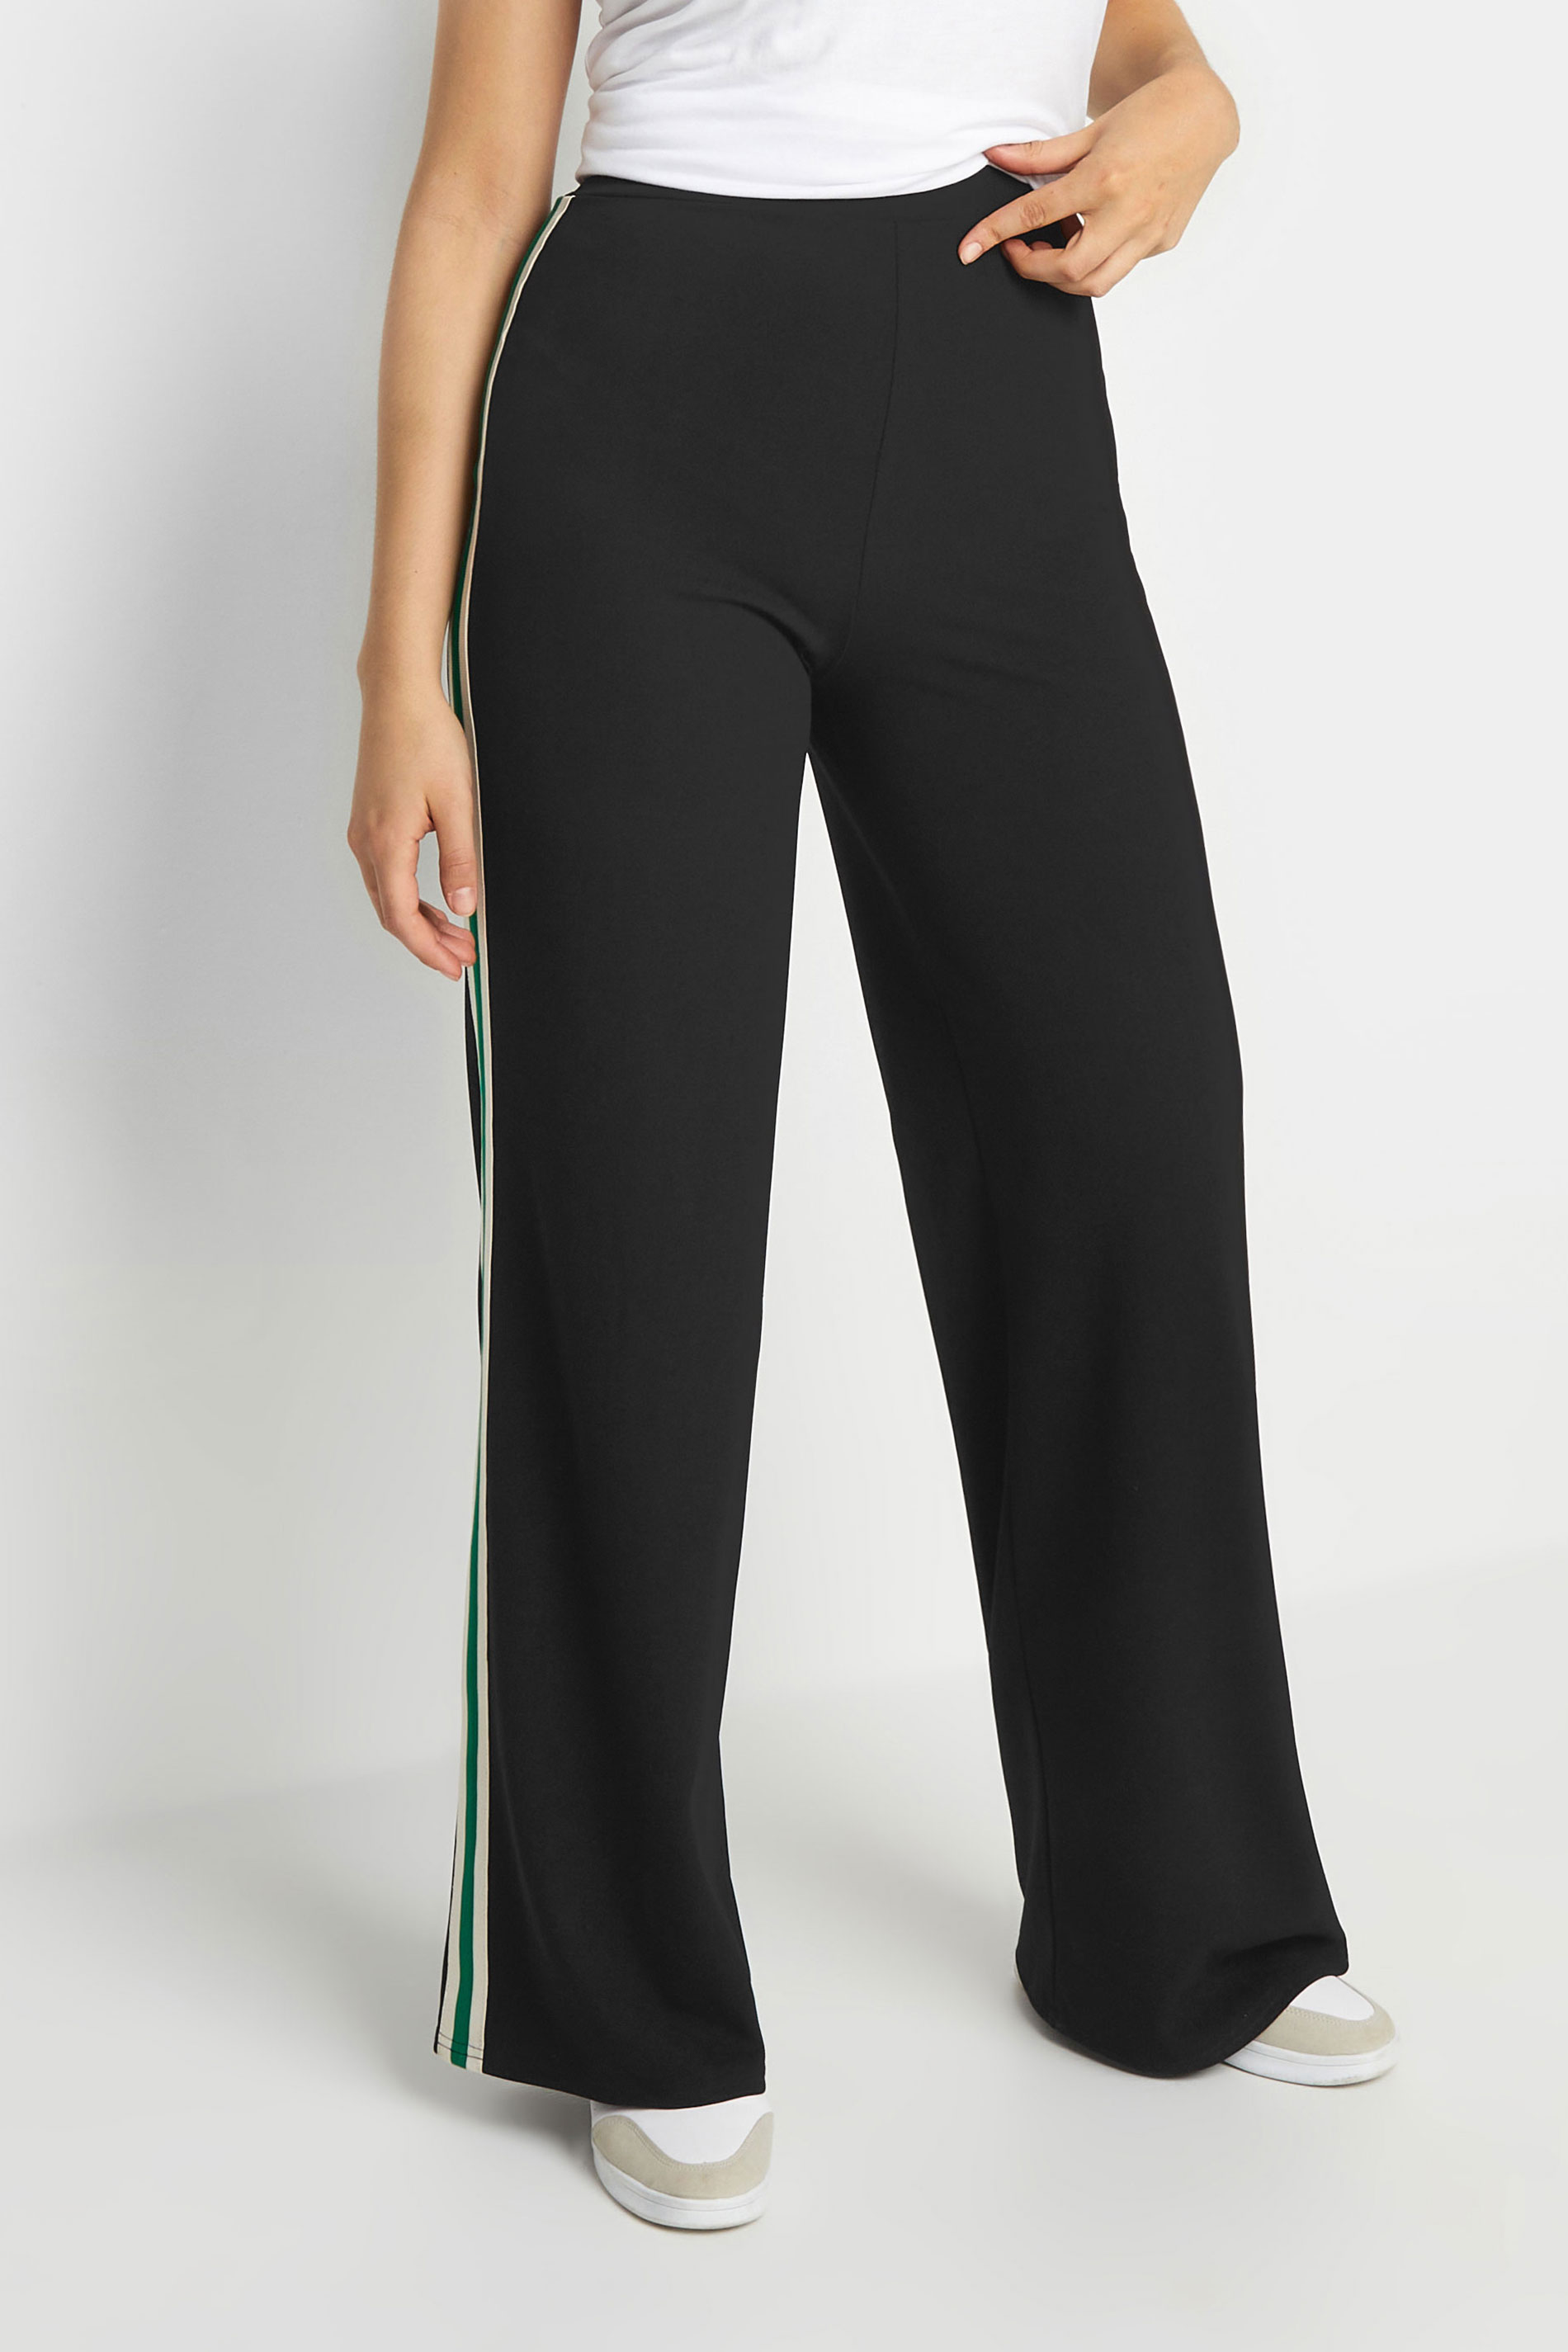 LTS Tall Women's Black & Green Side Stripe Wide Leg Trousers | Long Tall Sally 2